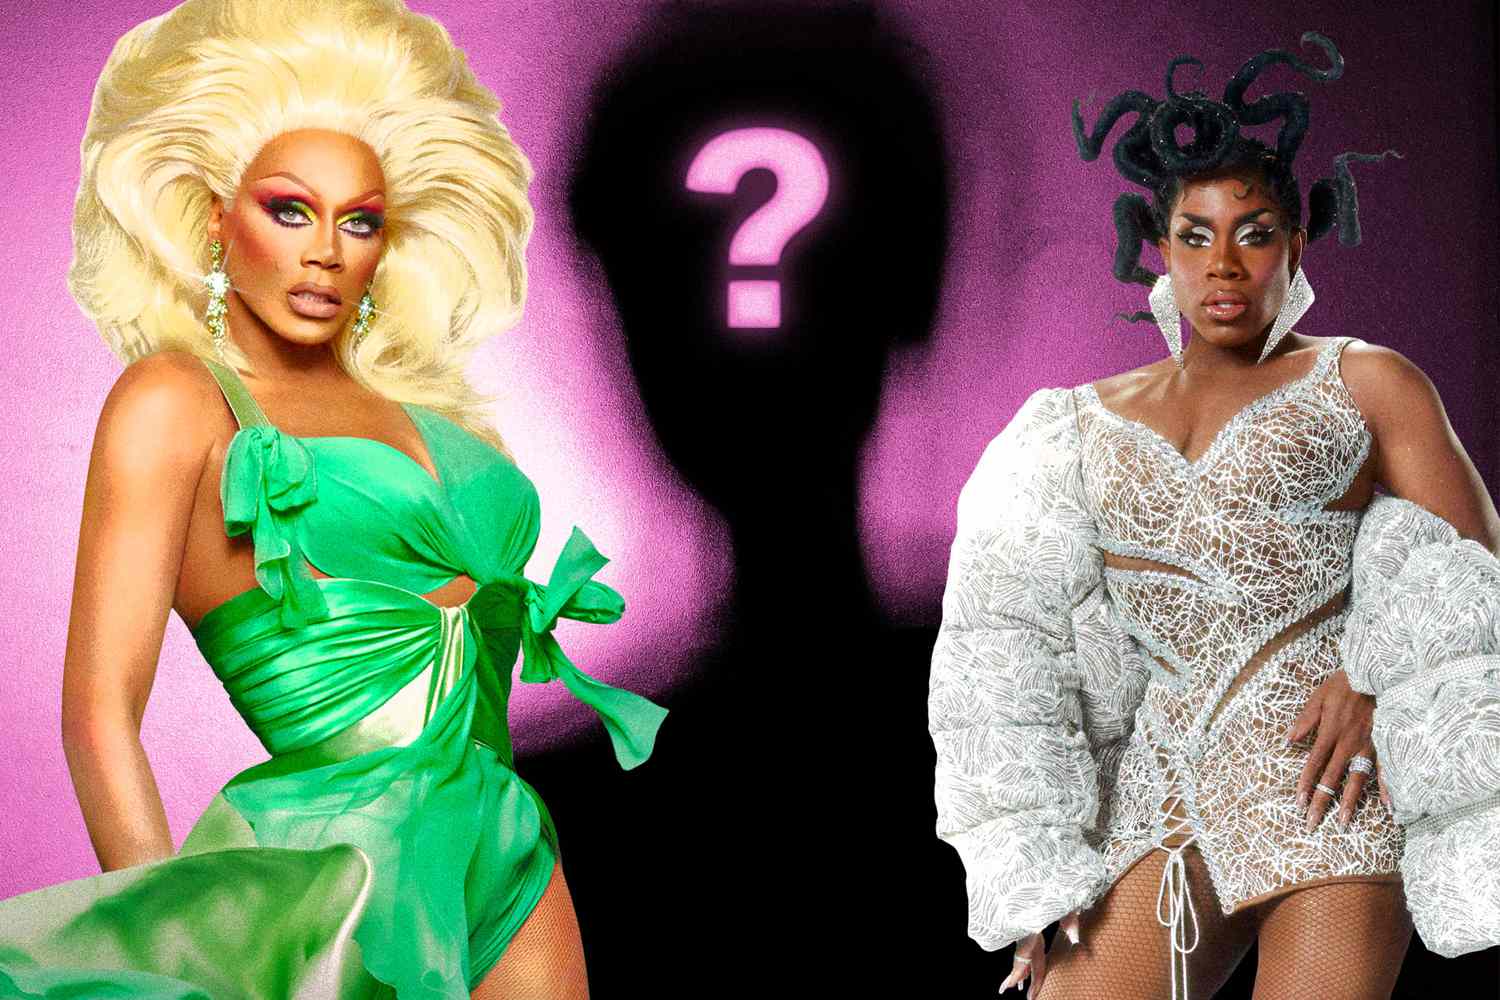 Mystery contestant spills on 'RuPaul's Secret Celebrity Drag Race' season 2 changes